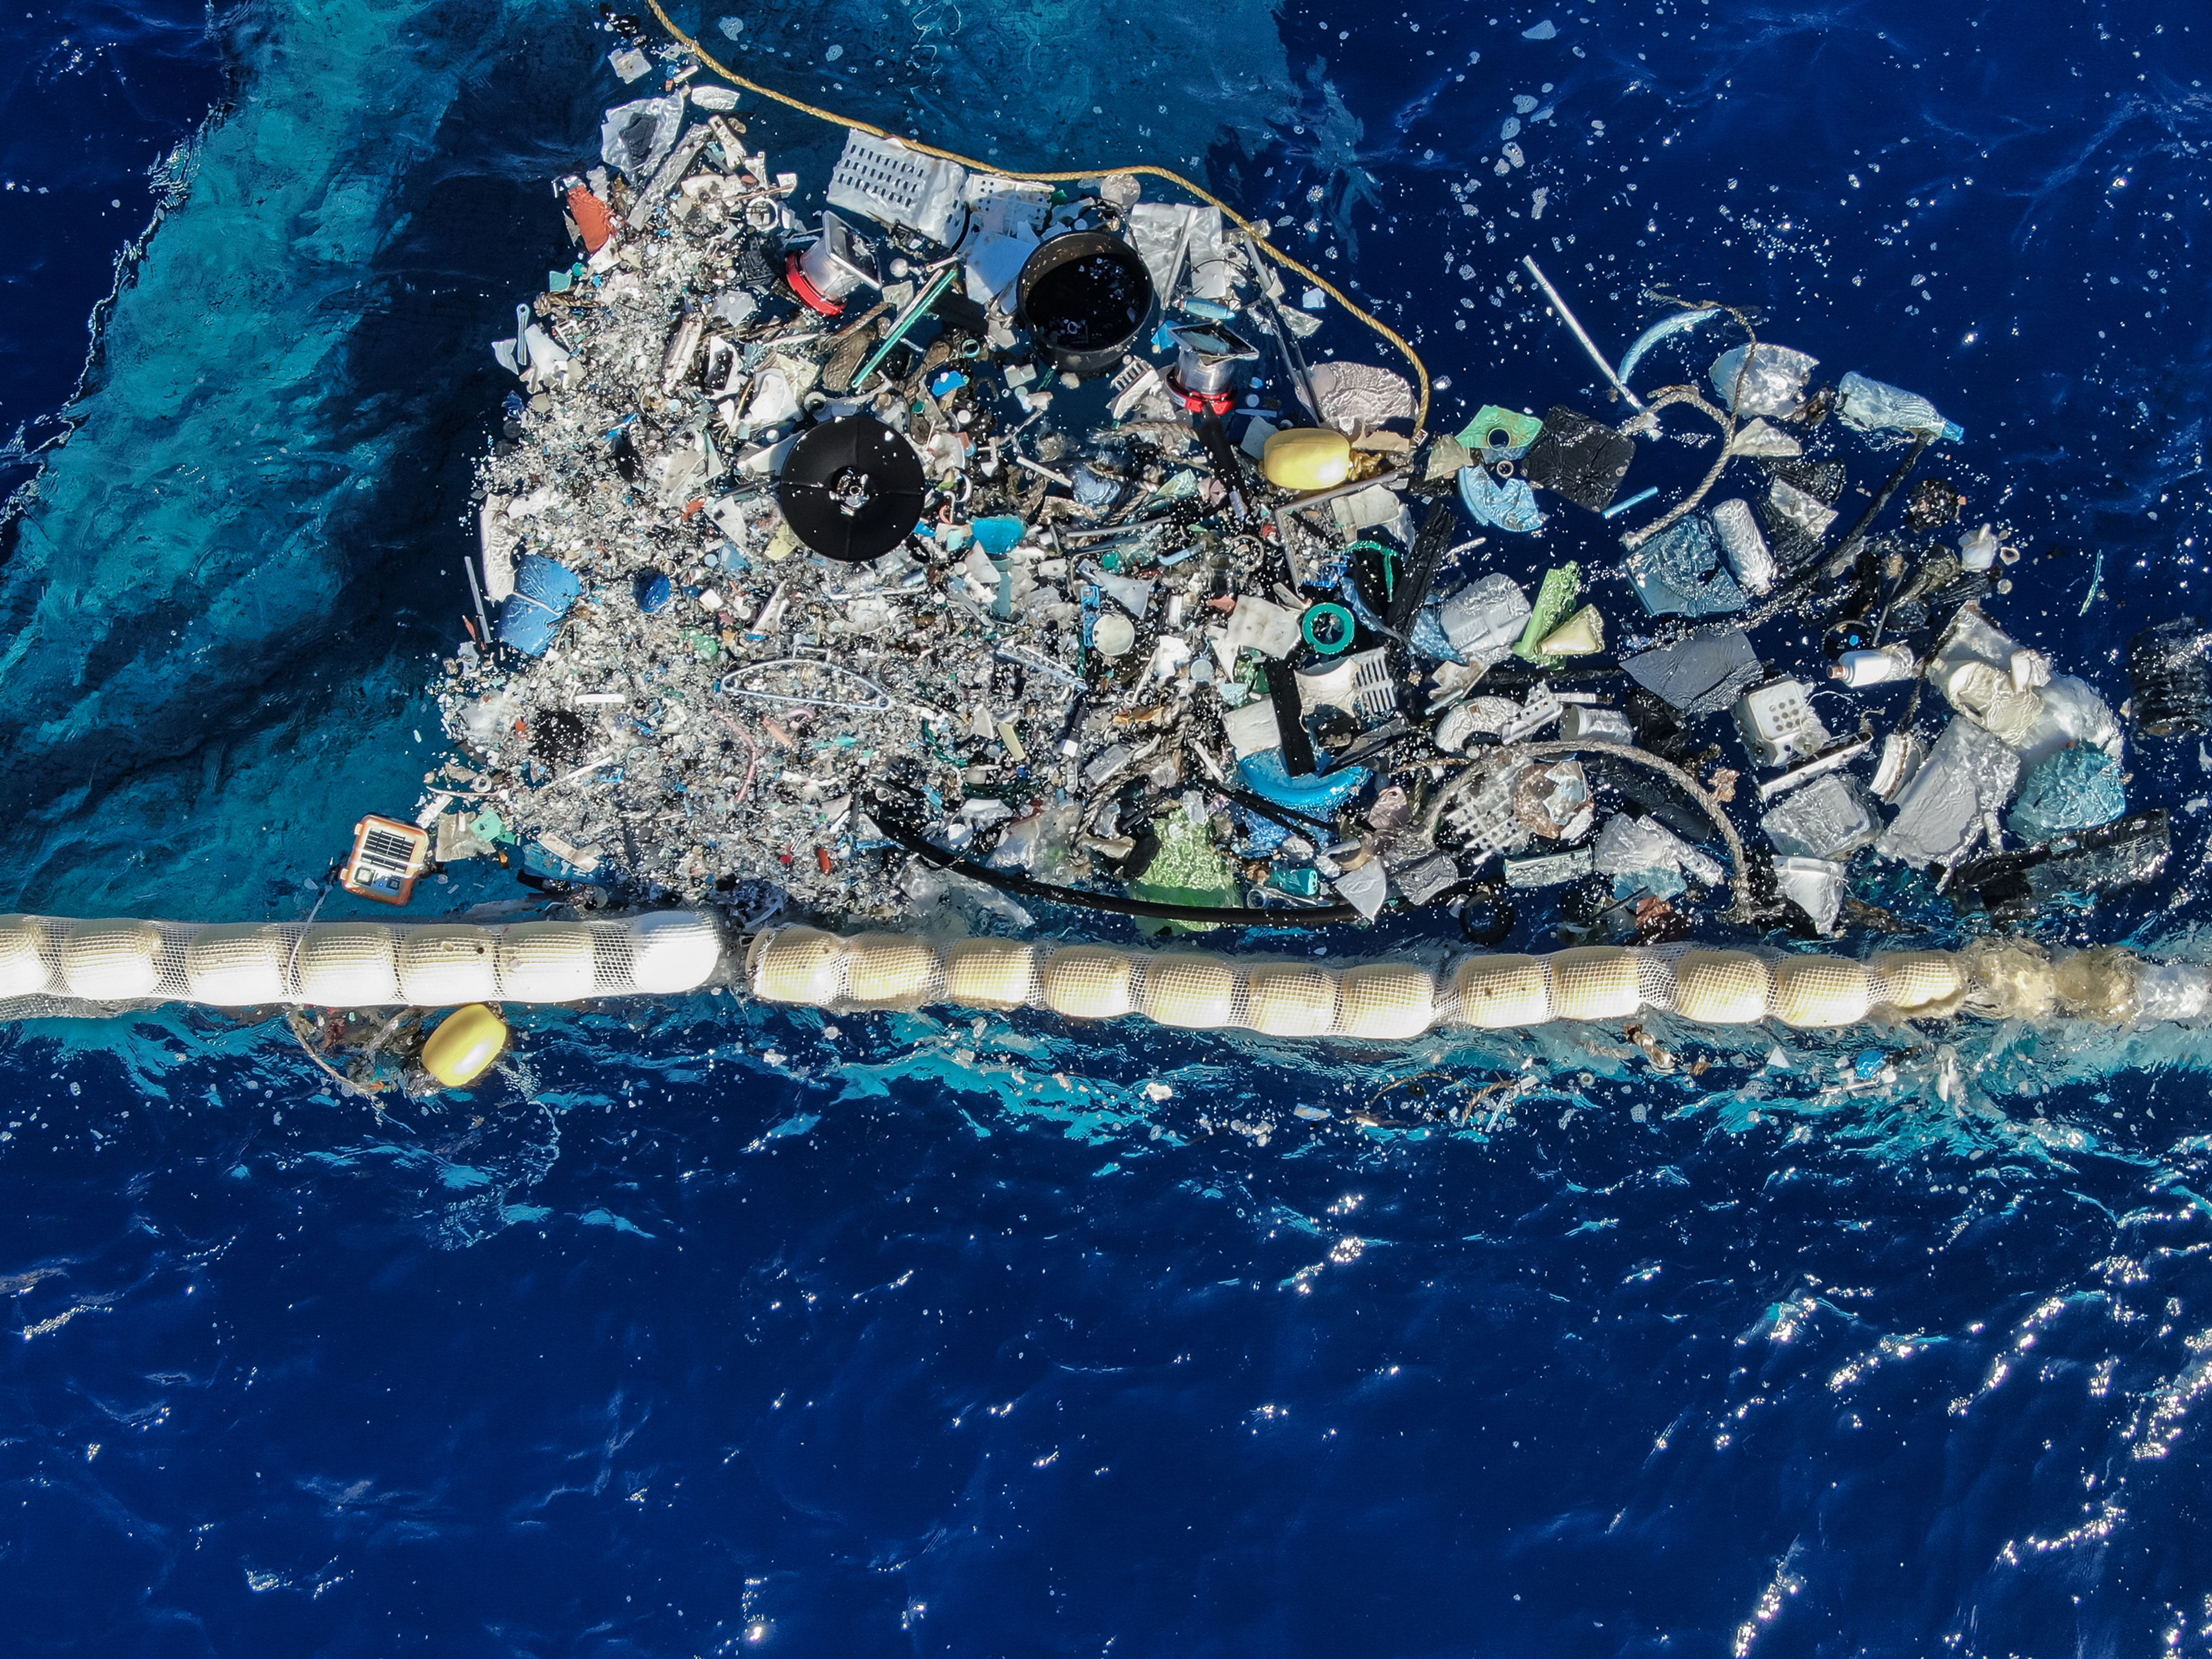 La organización de Slat, The Ocean Cleanup, ha desarrollado una herramienta para retirar la basura del Océano Pacífico.